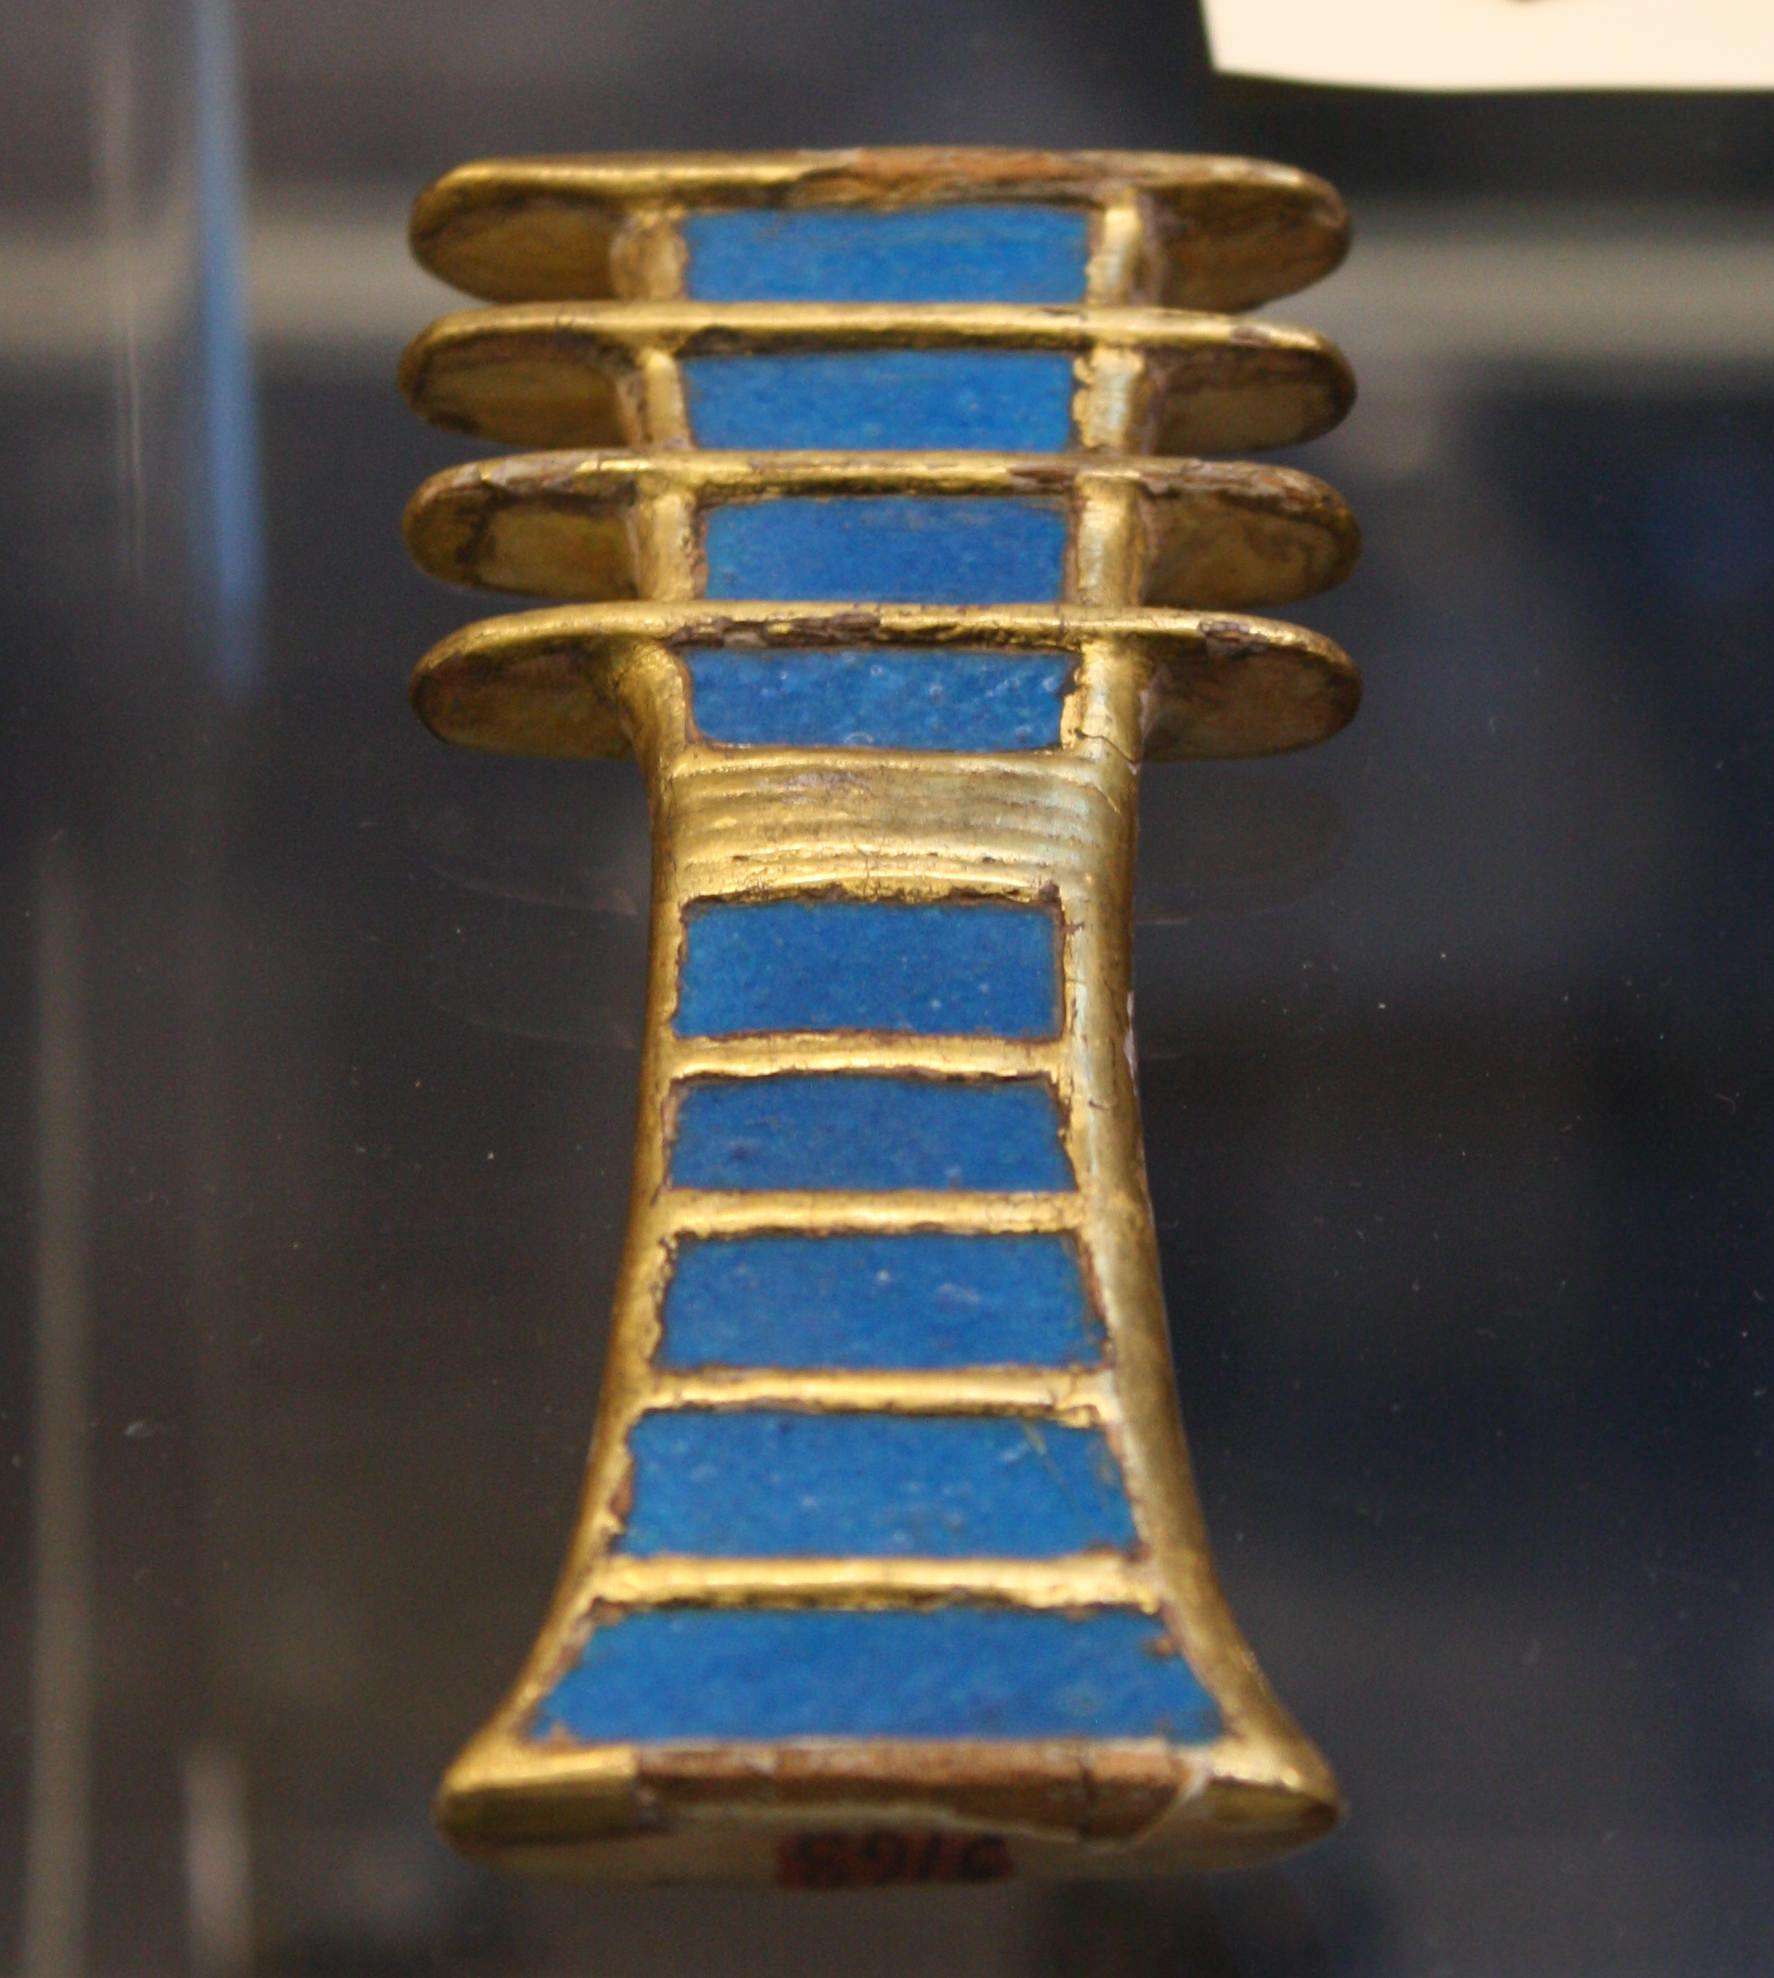 Pozlátený drevený a fajansový djed amulet (symbol stability) z hrobky kráľovnej Nefertari. Dynasty XIX, 1279-1213 BCE. (Egyptské múzeum, Turín)